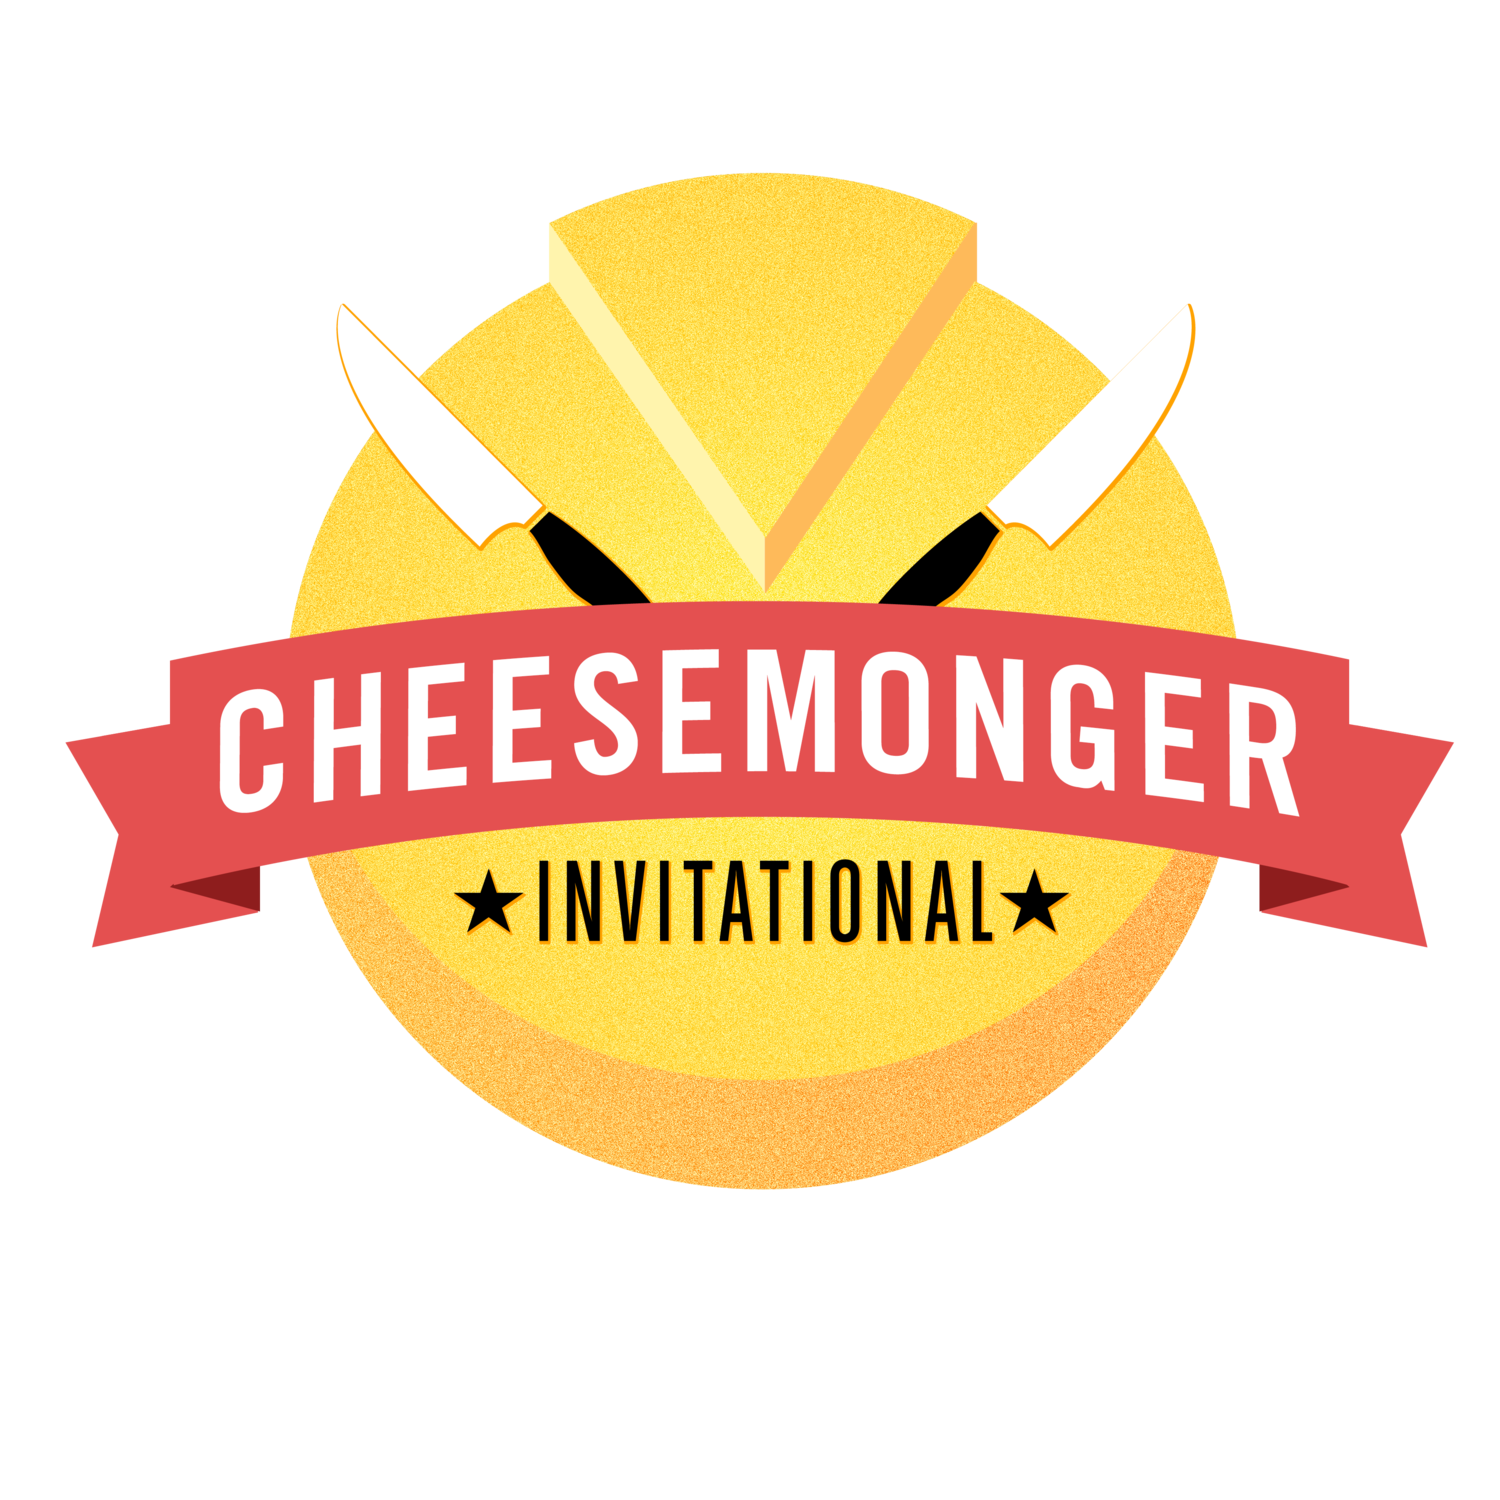 The Cheesemonger Invitational 